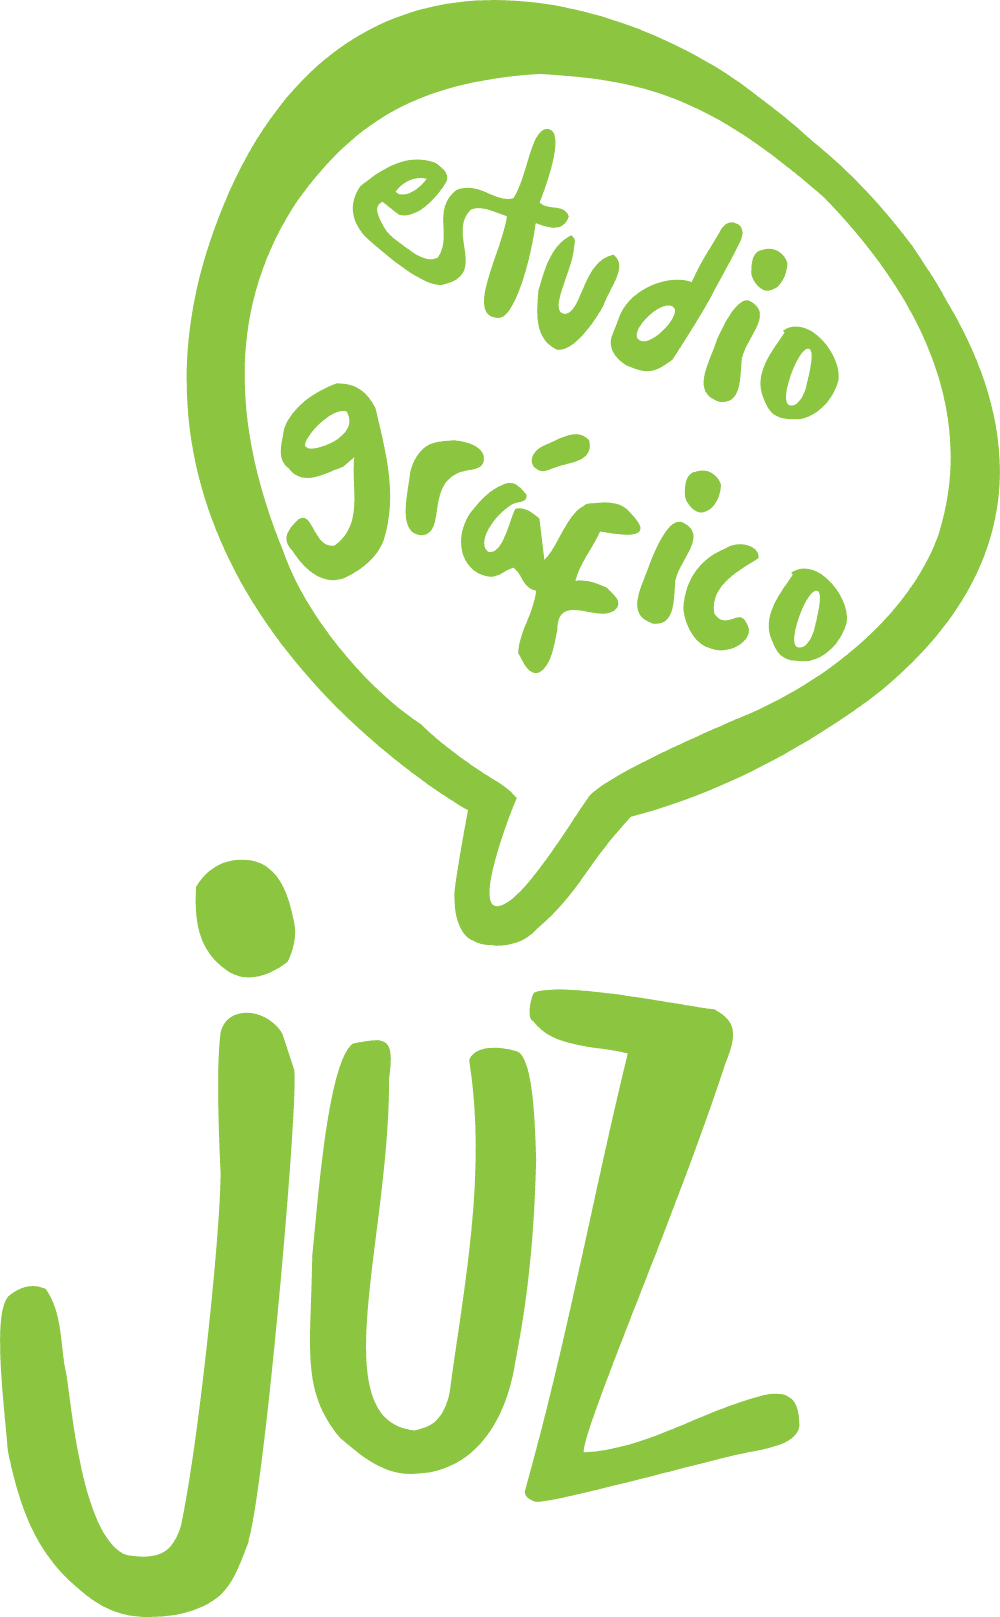 juz estudio grafico Logo download